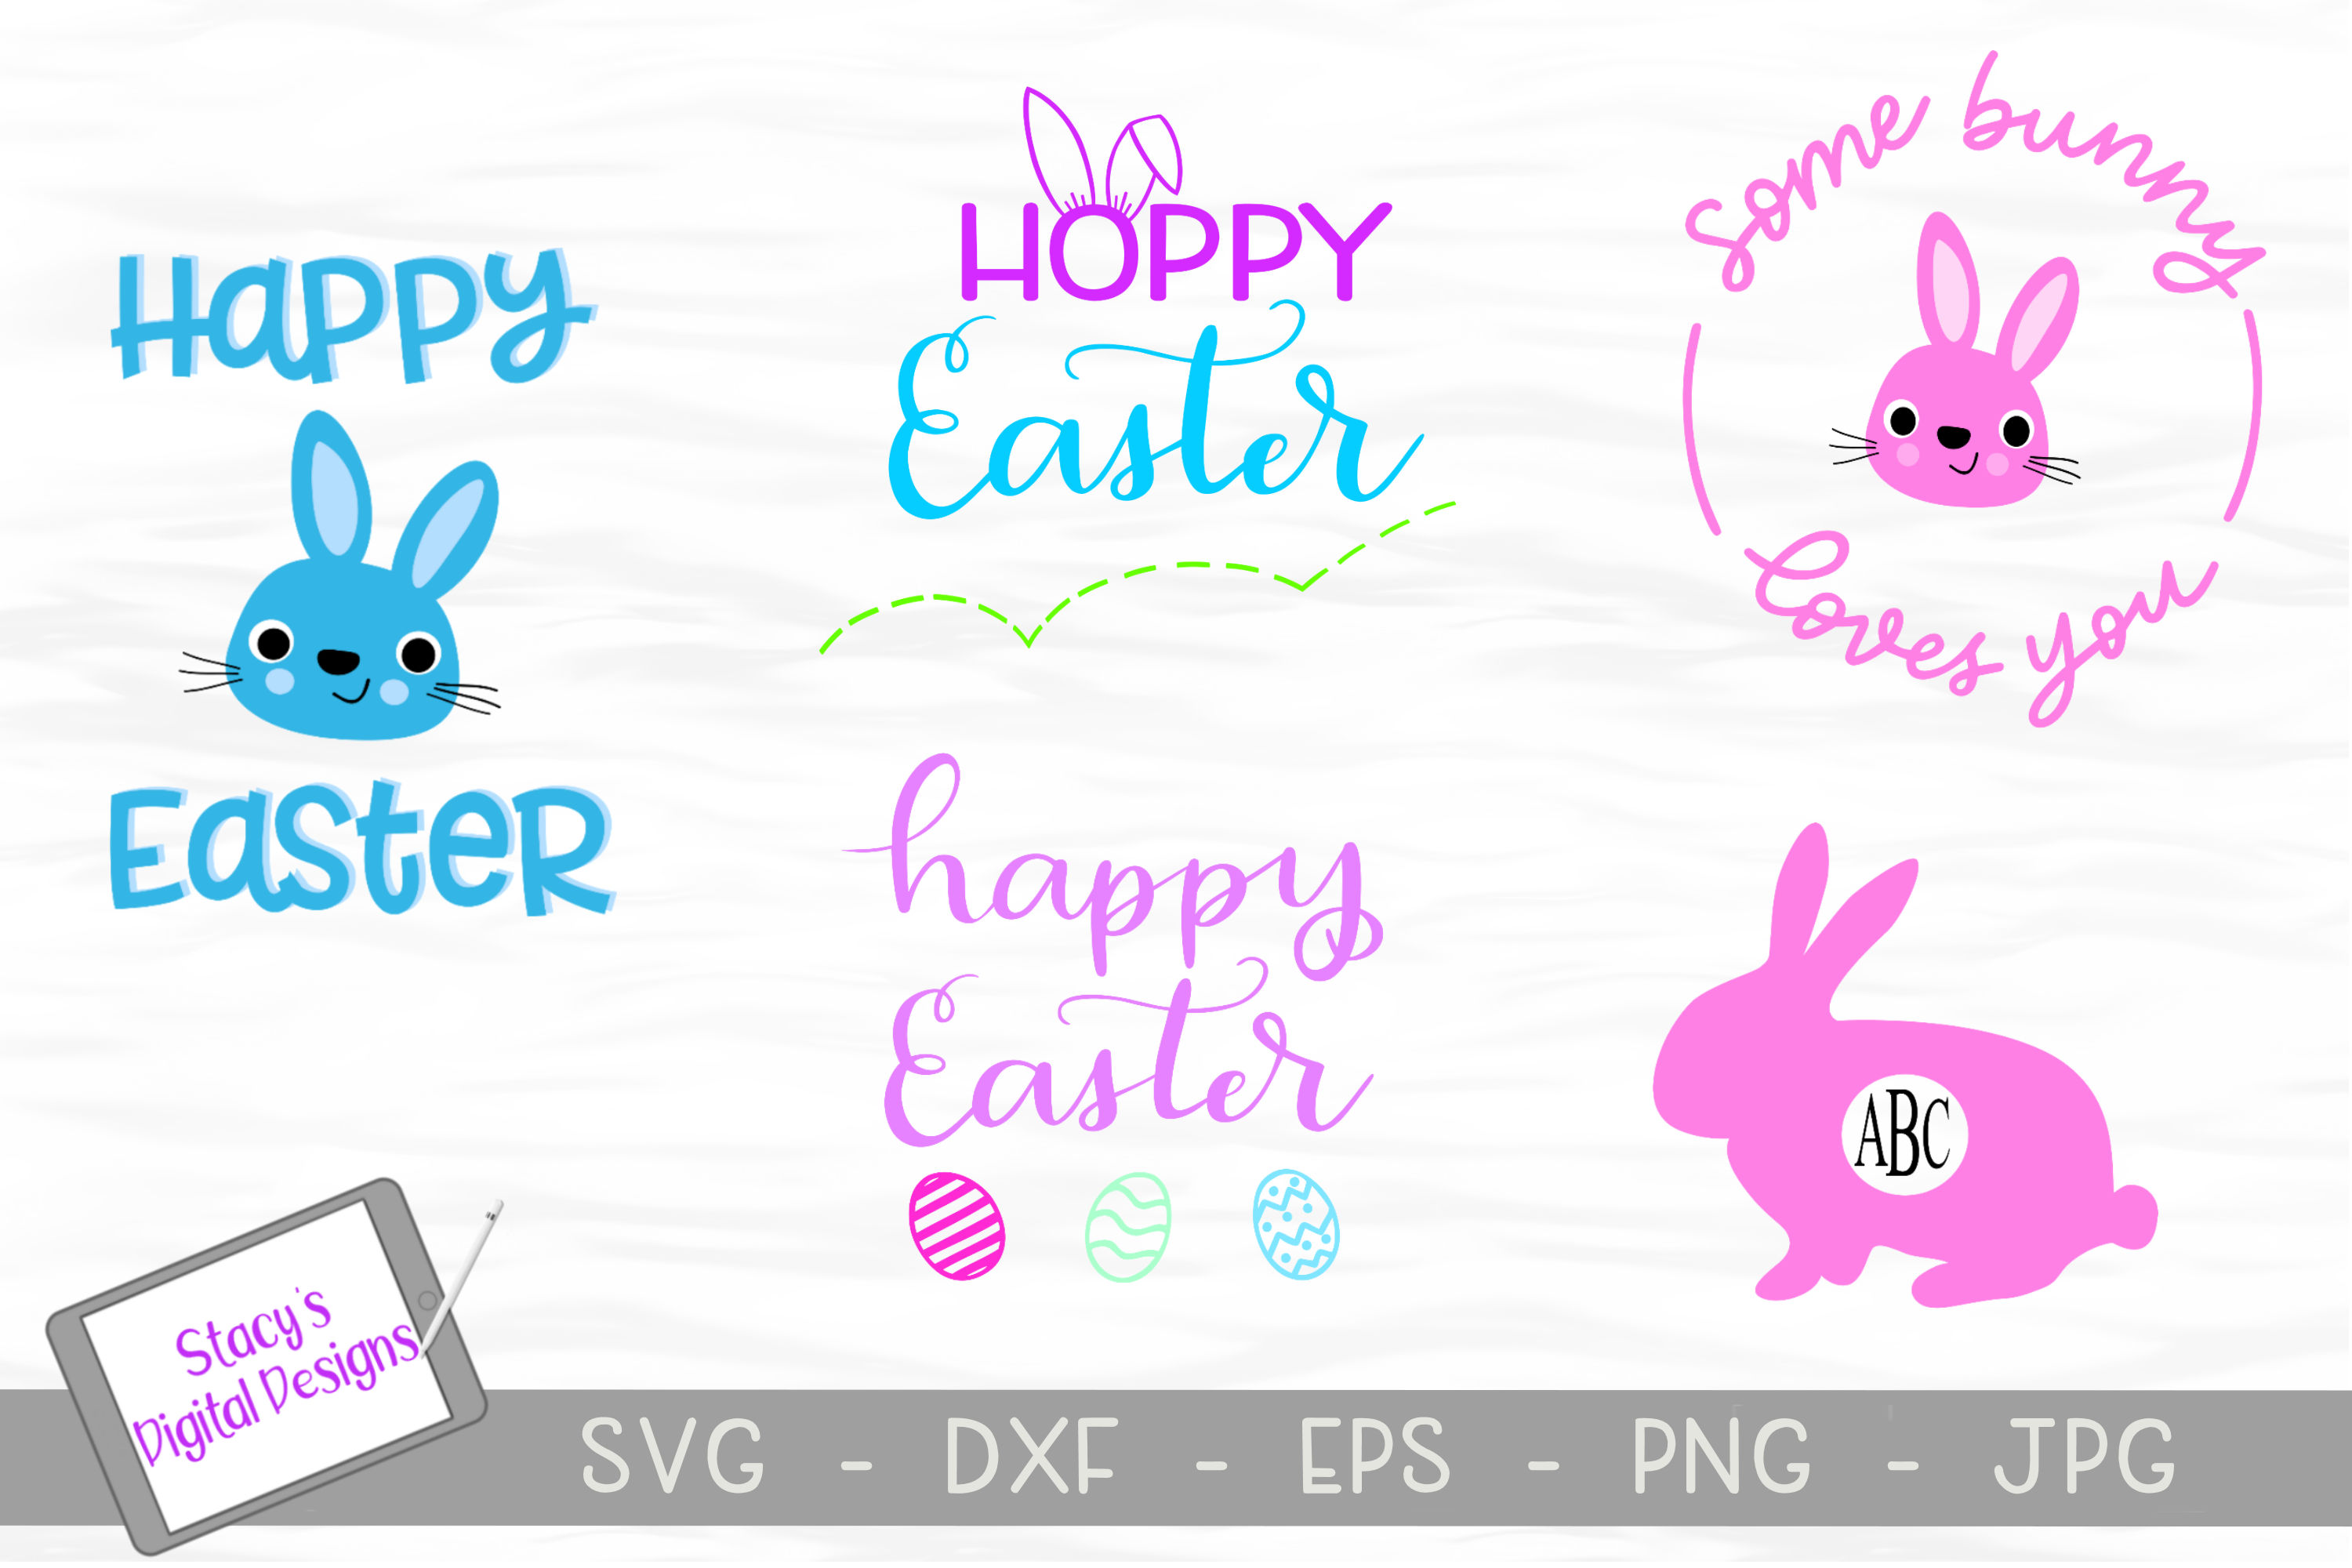 Easter SVG Bundle- Includes 5 Easter SVG designs (216244) | Cut Files